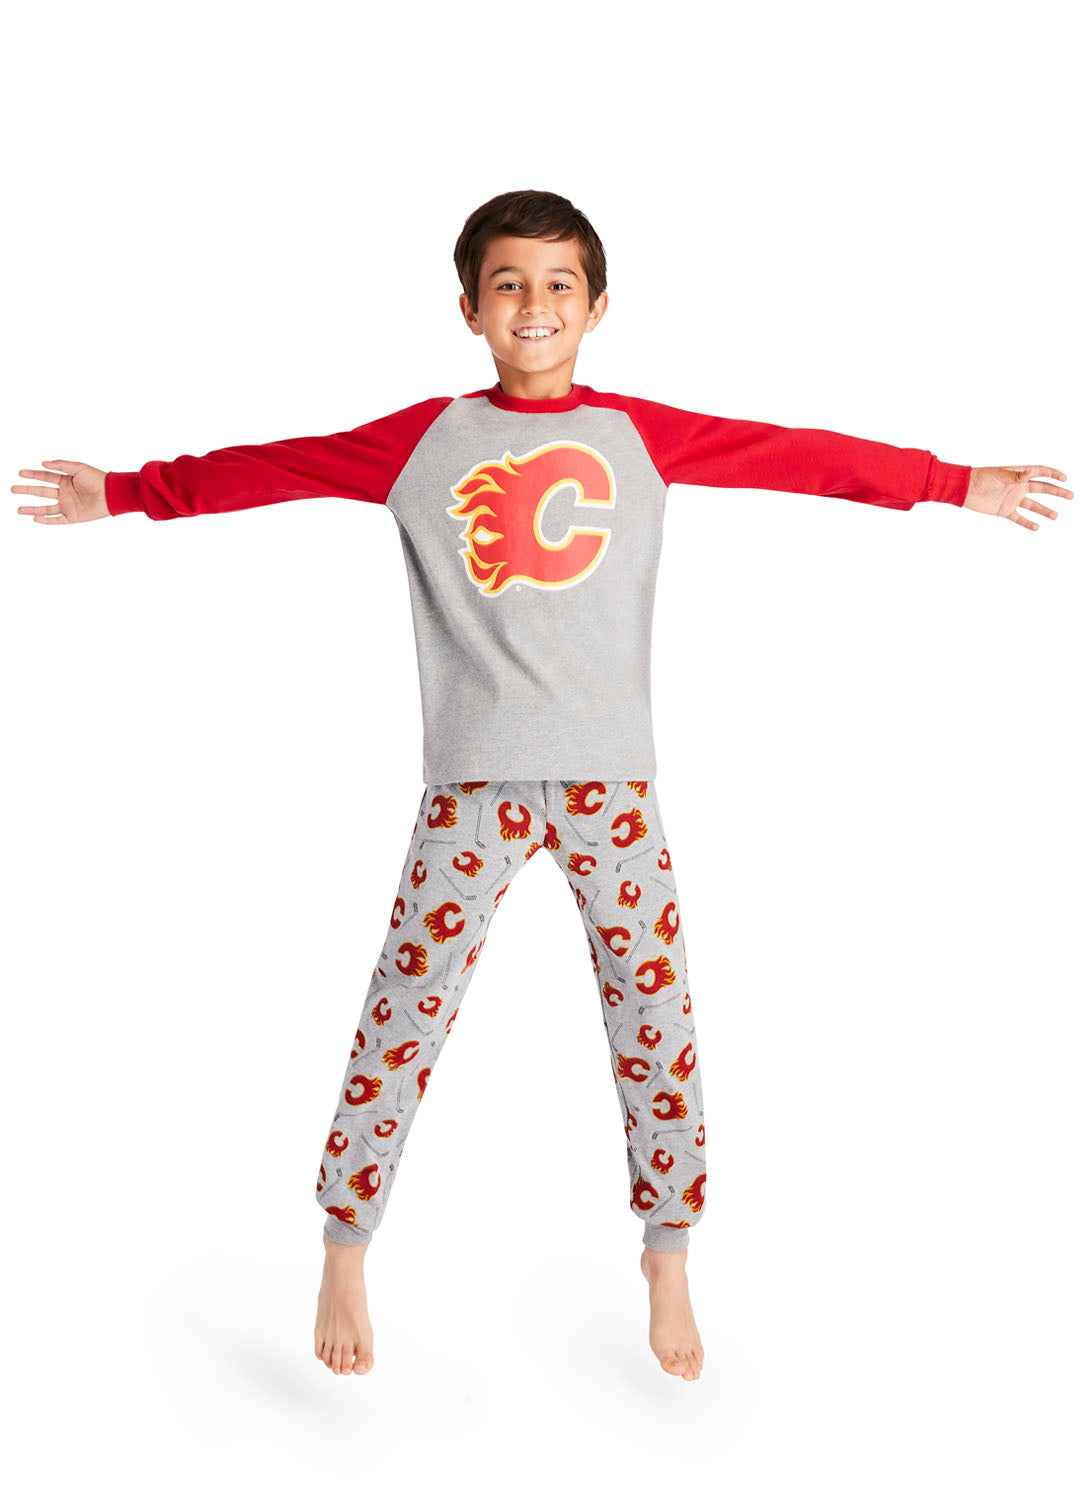 Boy jumping and wearing Calgary Flames Pajama Set